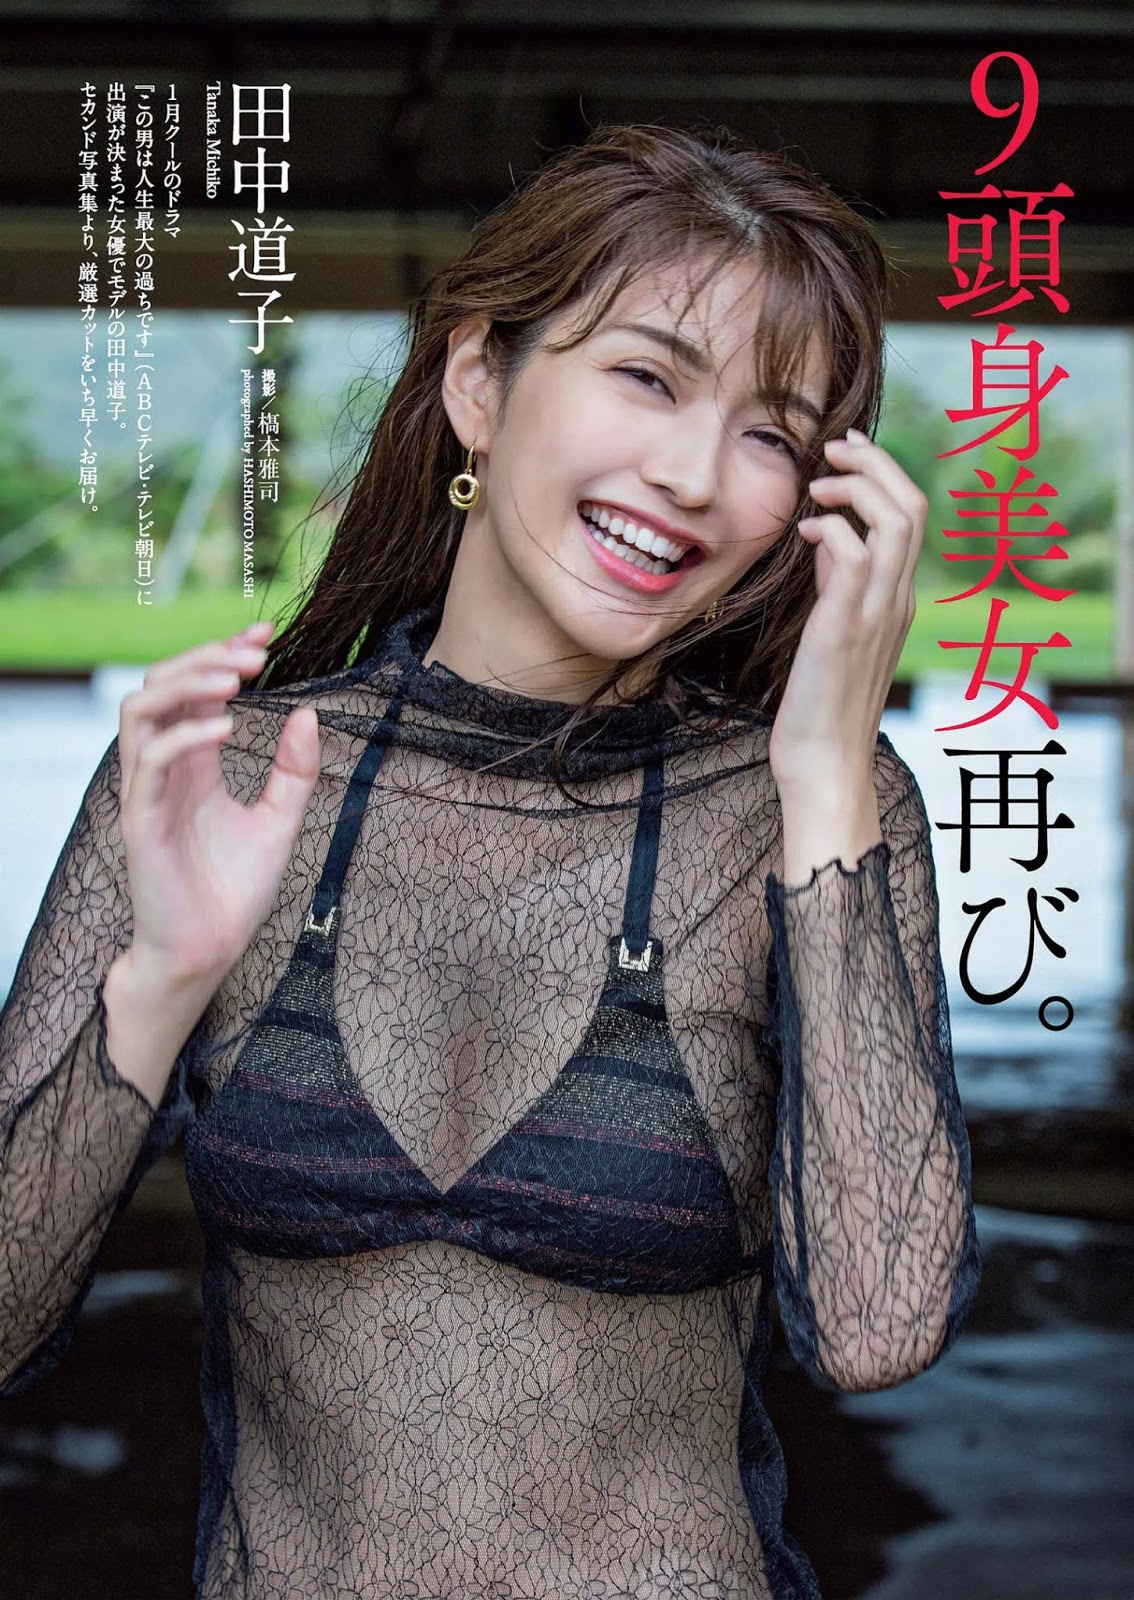 Michiko Tanaka 田中道子, Weekly Playboy 2019 No.52 (週刊プレイボーイ 2019年52号)